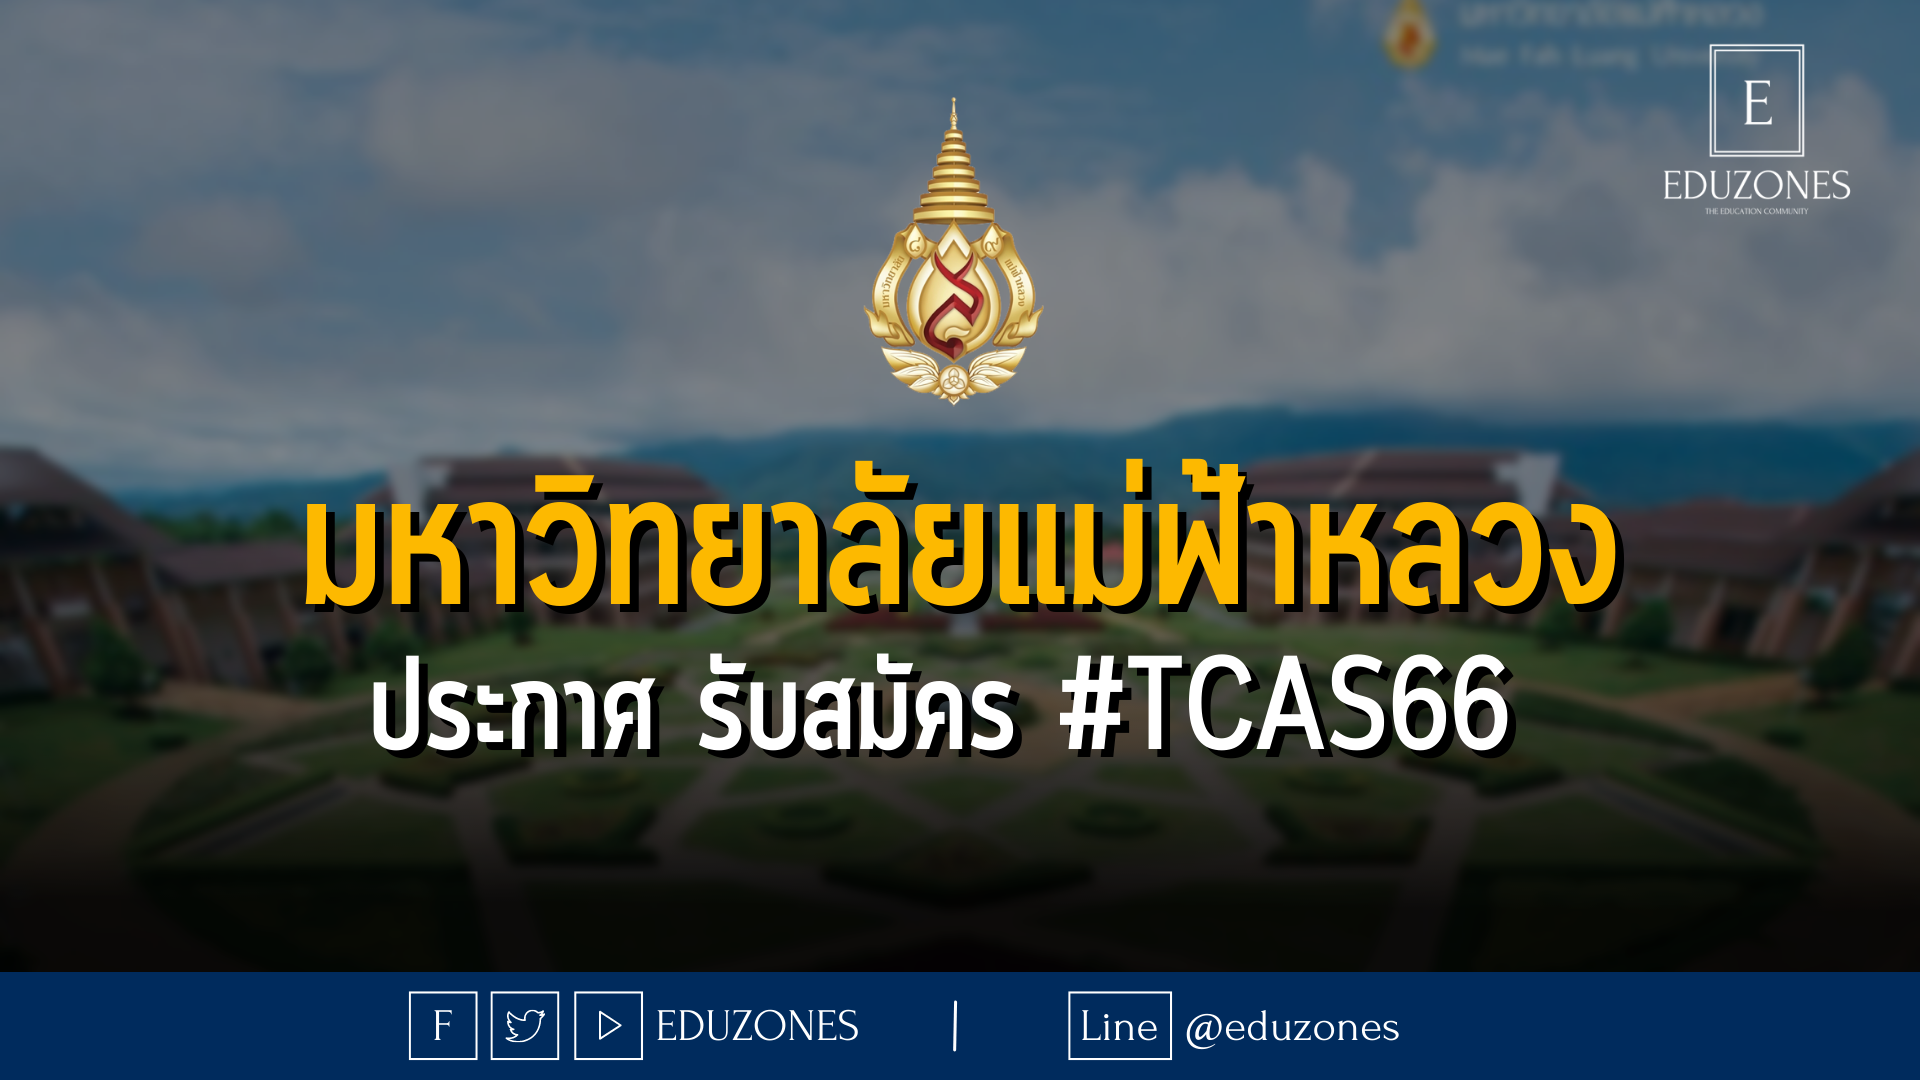 มหาวิทยาลัยแม่ฟ้าหลวง ประกาศ รับสมัคร #TCAS66 